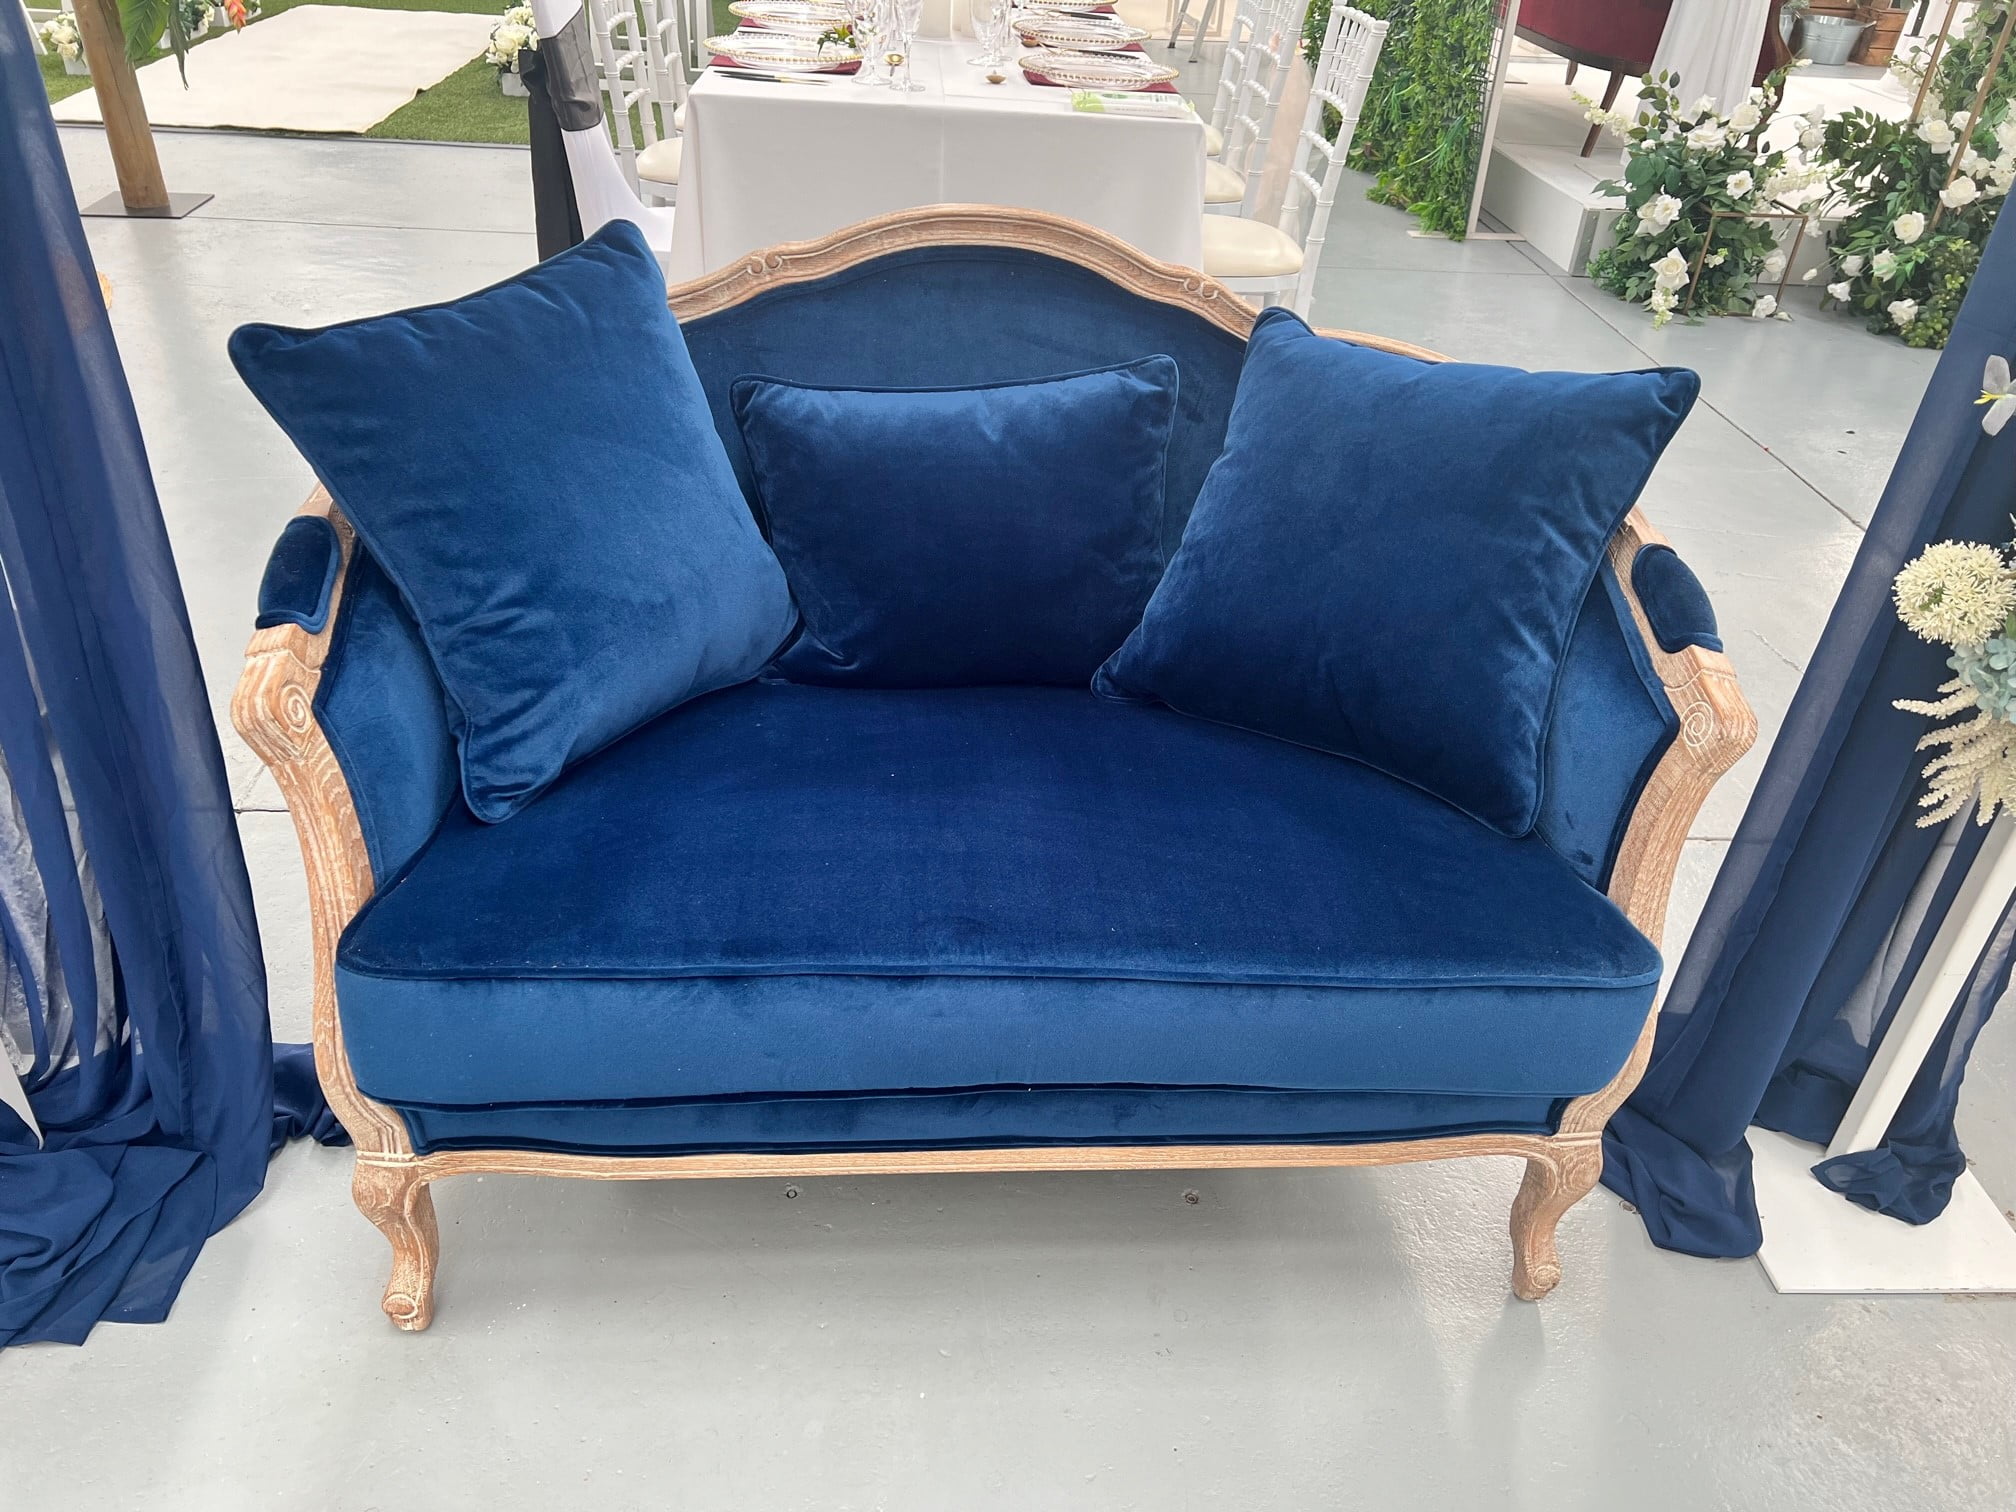 Royal blue velvet 2-seater couch - Weddings of Distinction